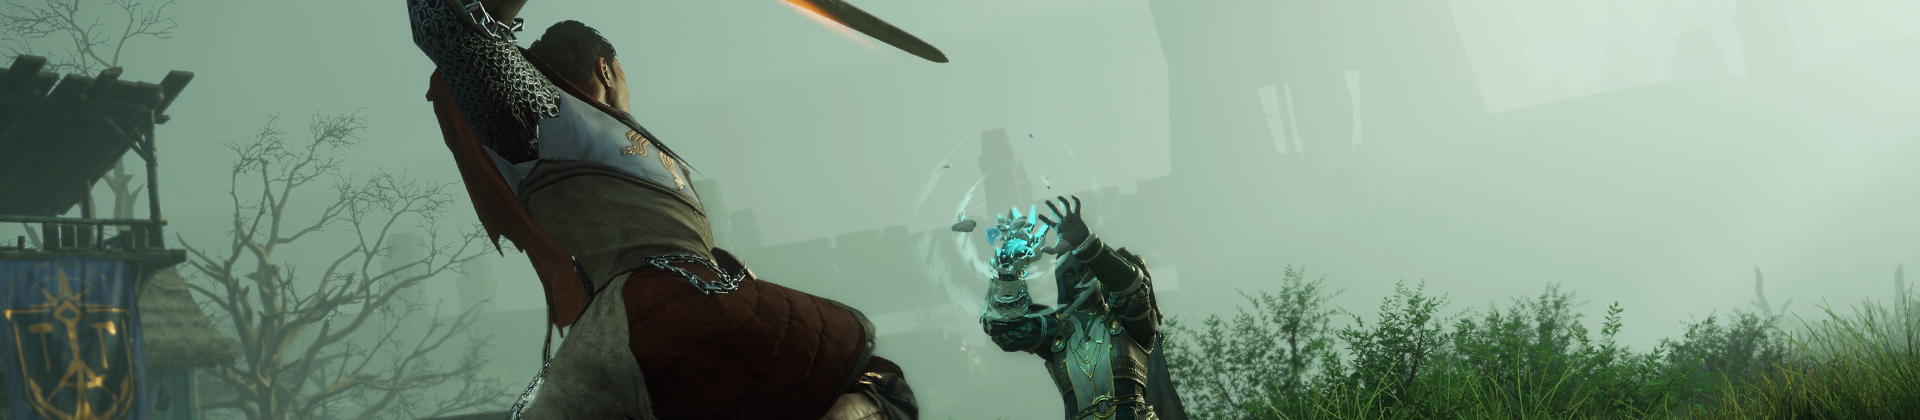 Скриншот Нового Мира, изображающий поединок двух игроков.  Персонаж, повернувшийся спиной к камере, использует меч против персонажа, носящего новую Ледяную перчатку, с помощью которого он произносит заклинание.